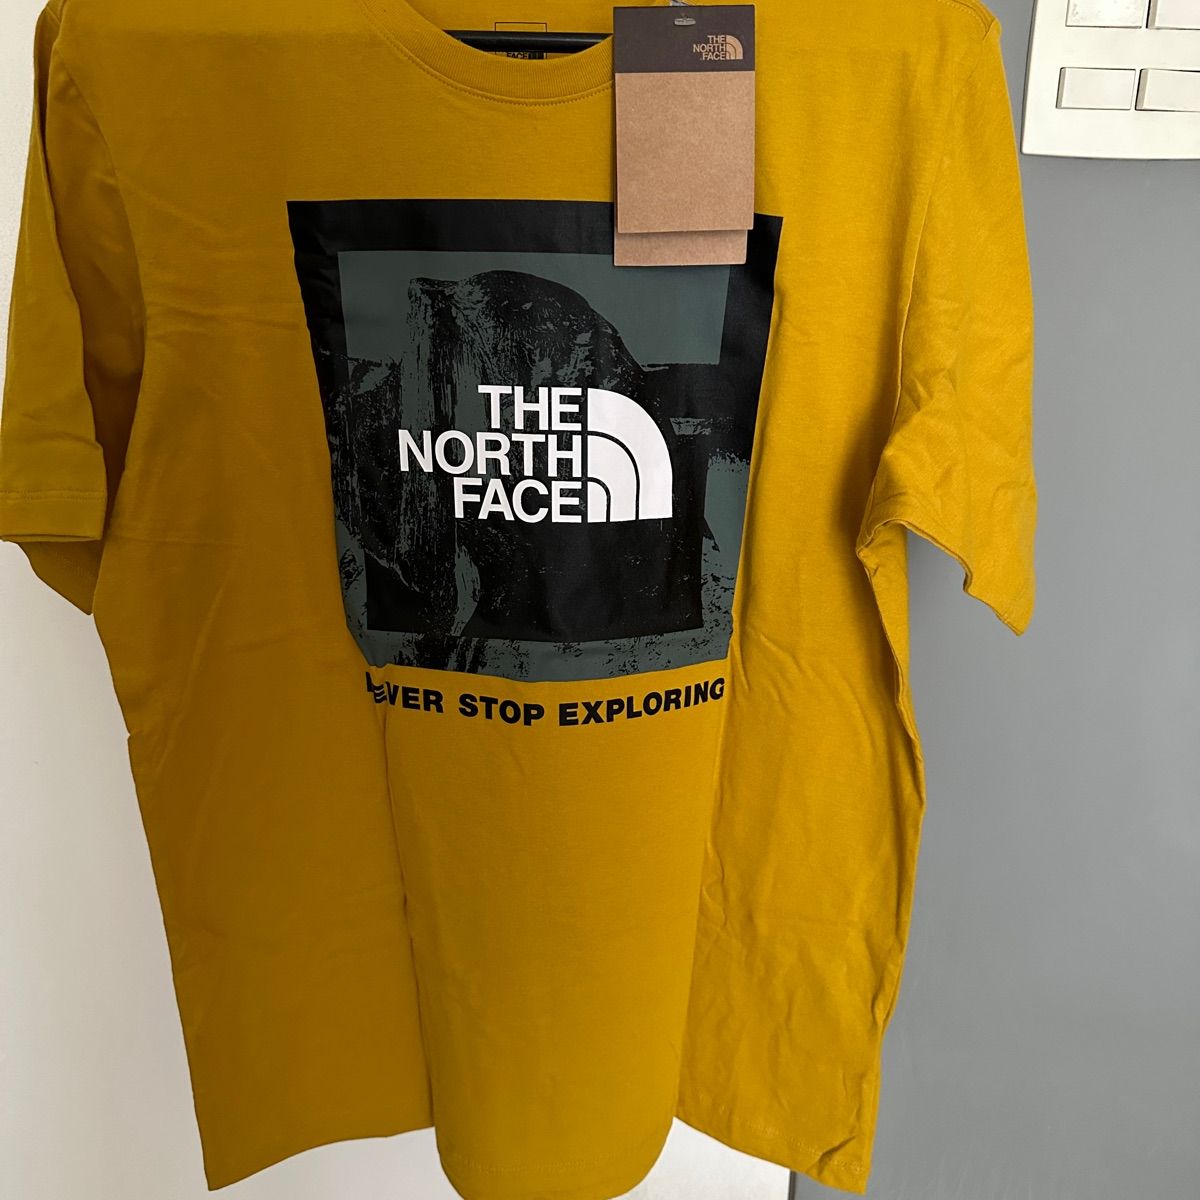 Camiseta Masculina The North Face Half Dome Tee Vermelha | Camiseta  Masculina The North Face Usado 91445205 | enjoei